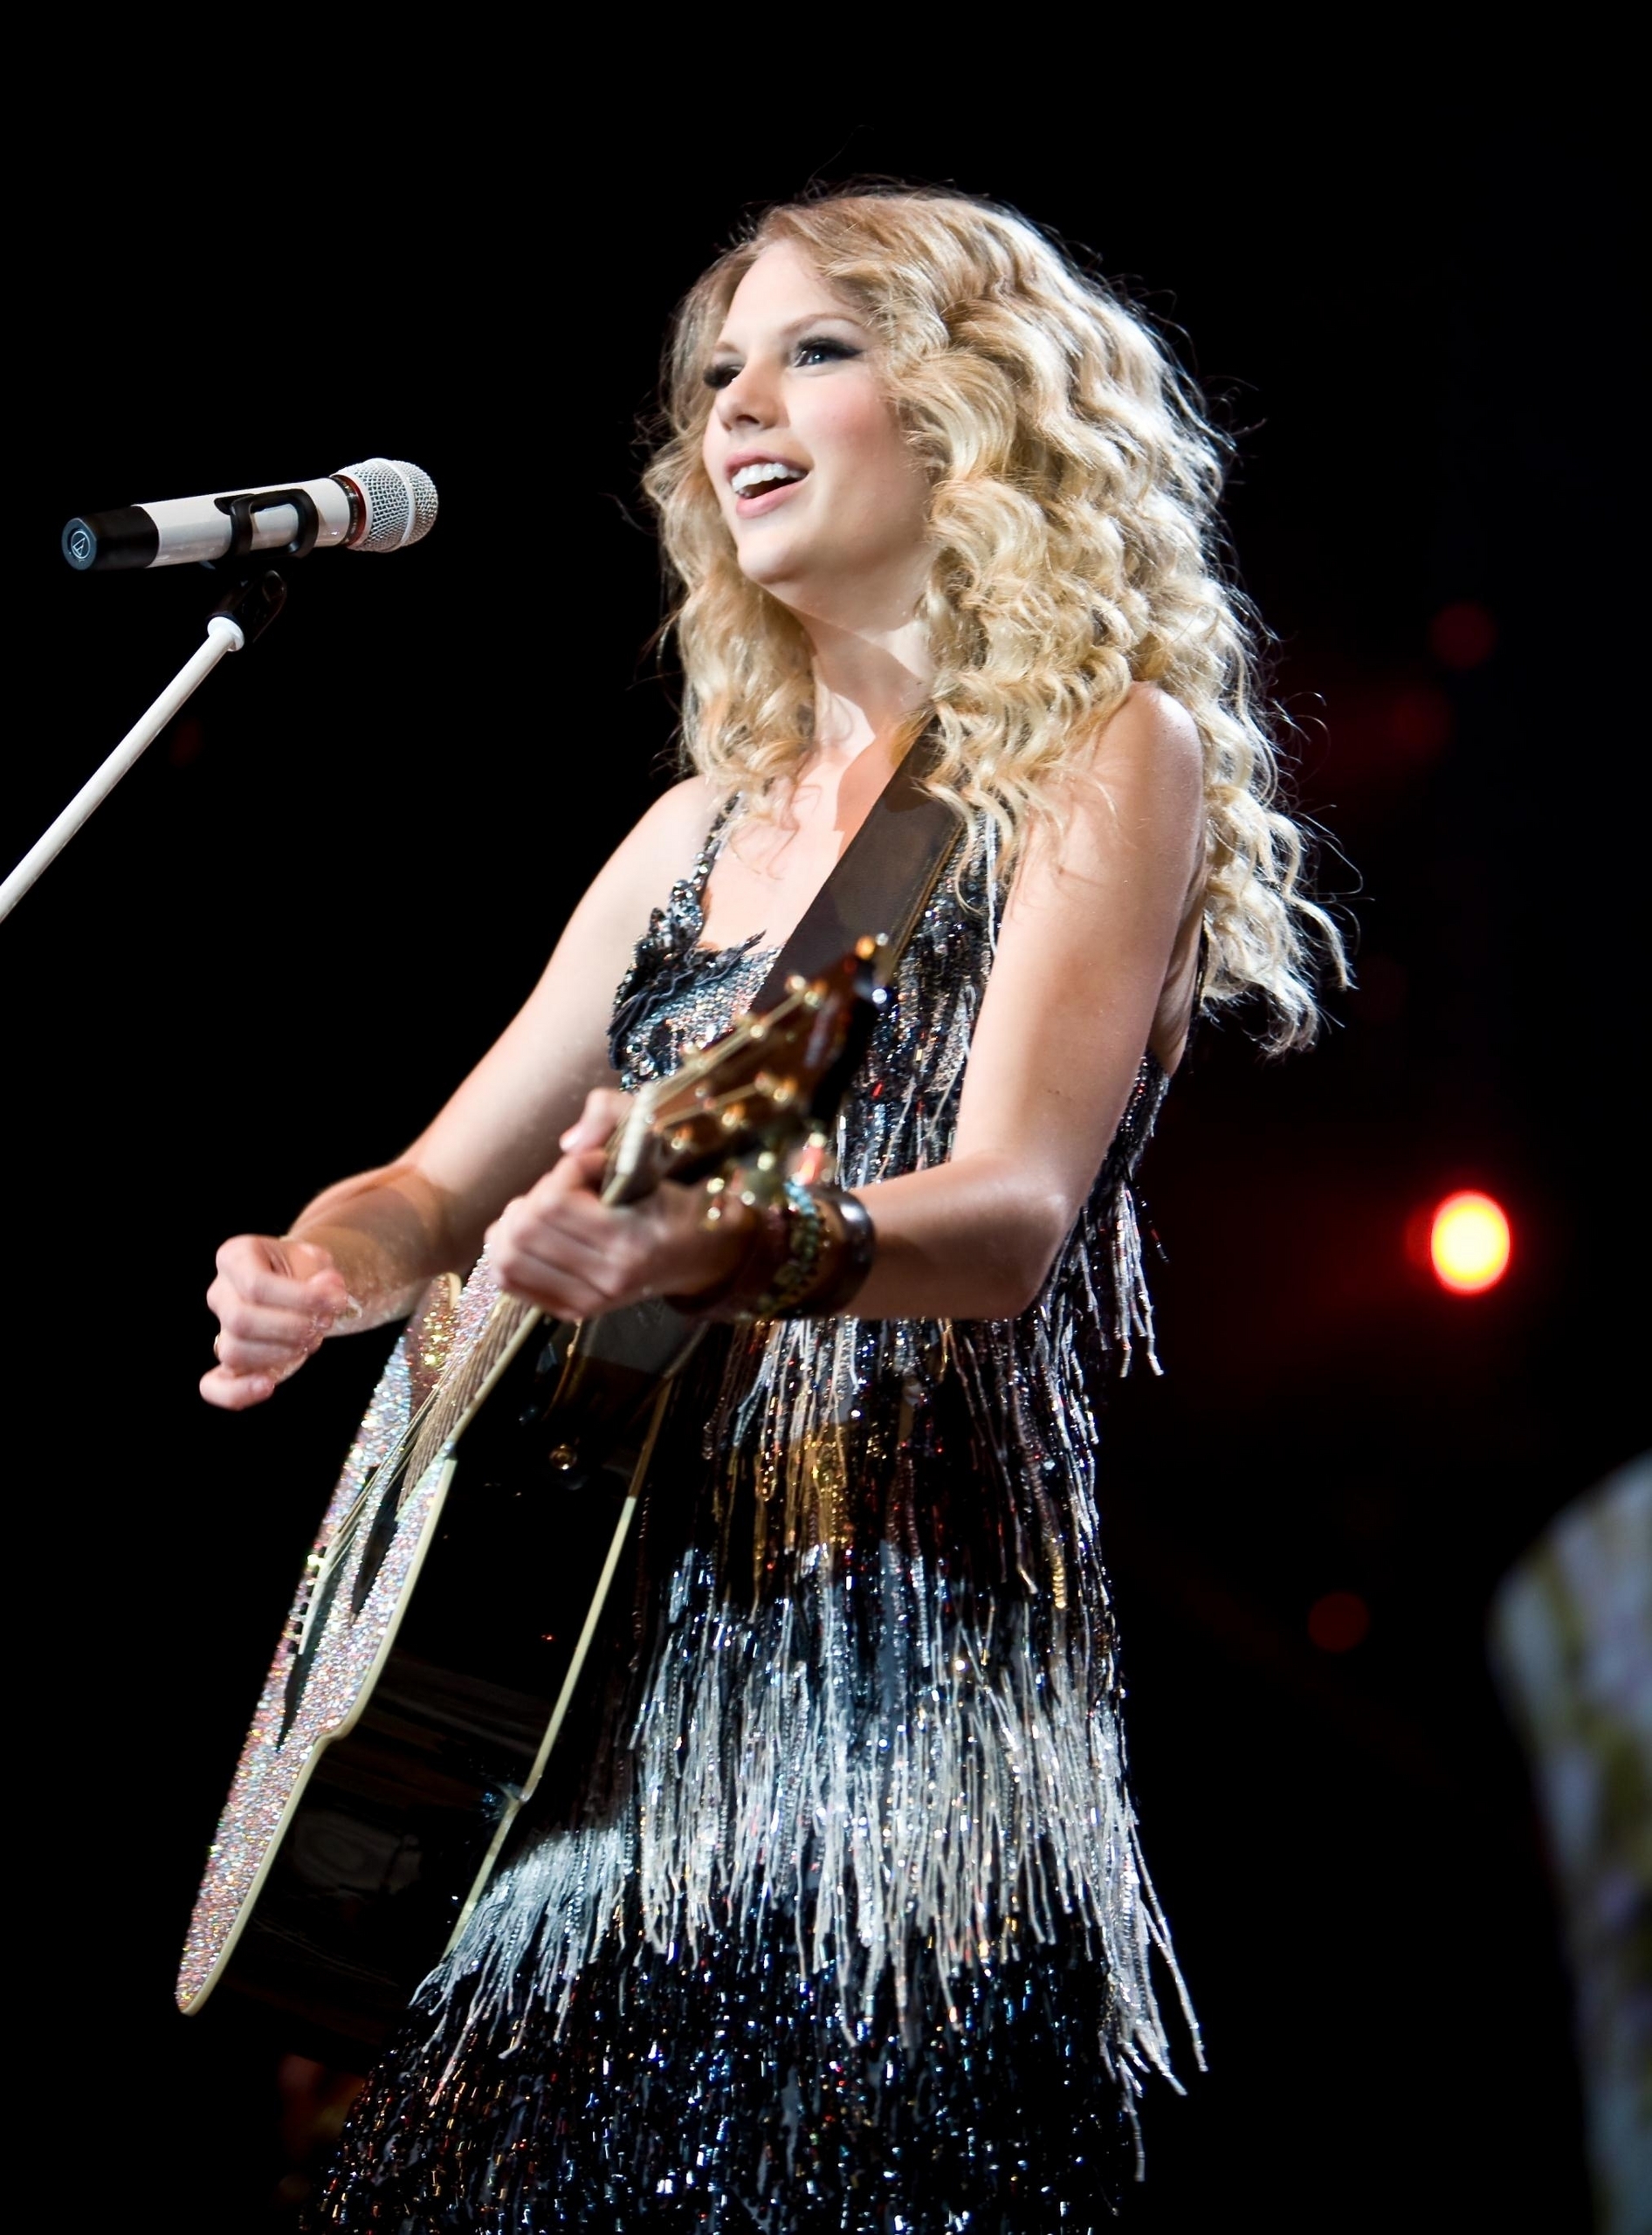 Taylor Swift - Photoshoot #101: Fearless Tour (2009) - Anichu90 Photo (17989280) - Fanpop